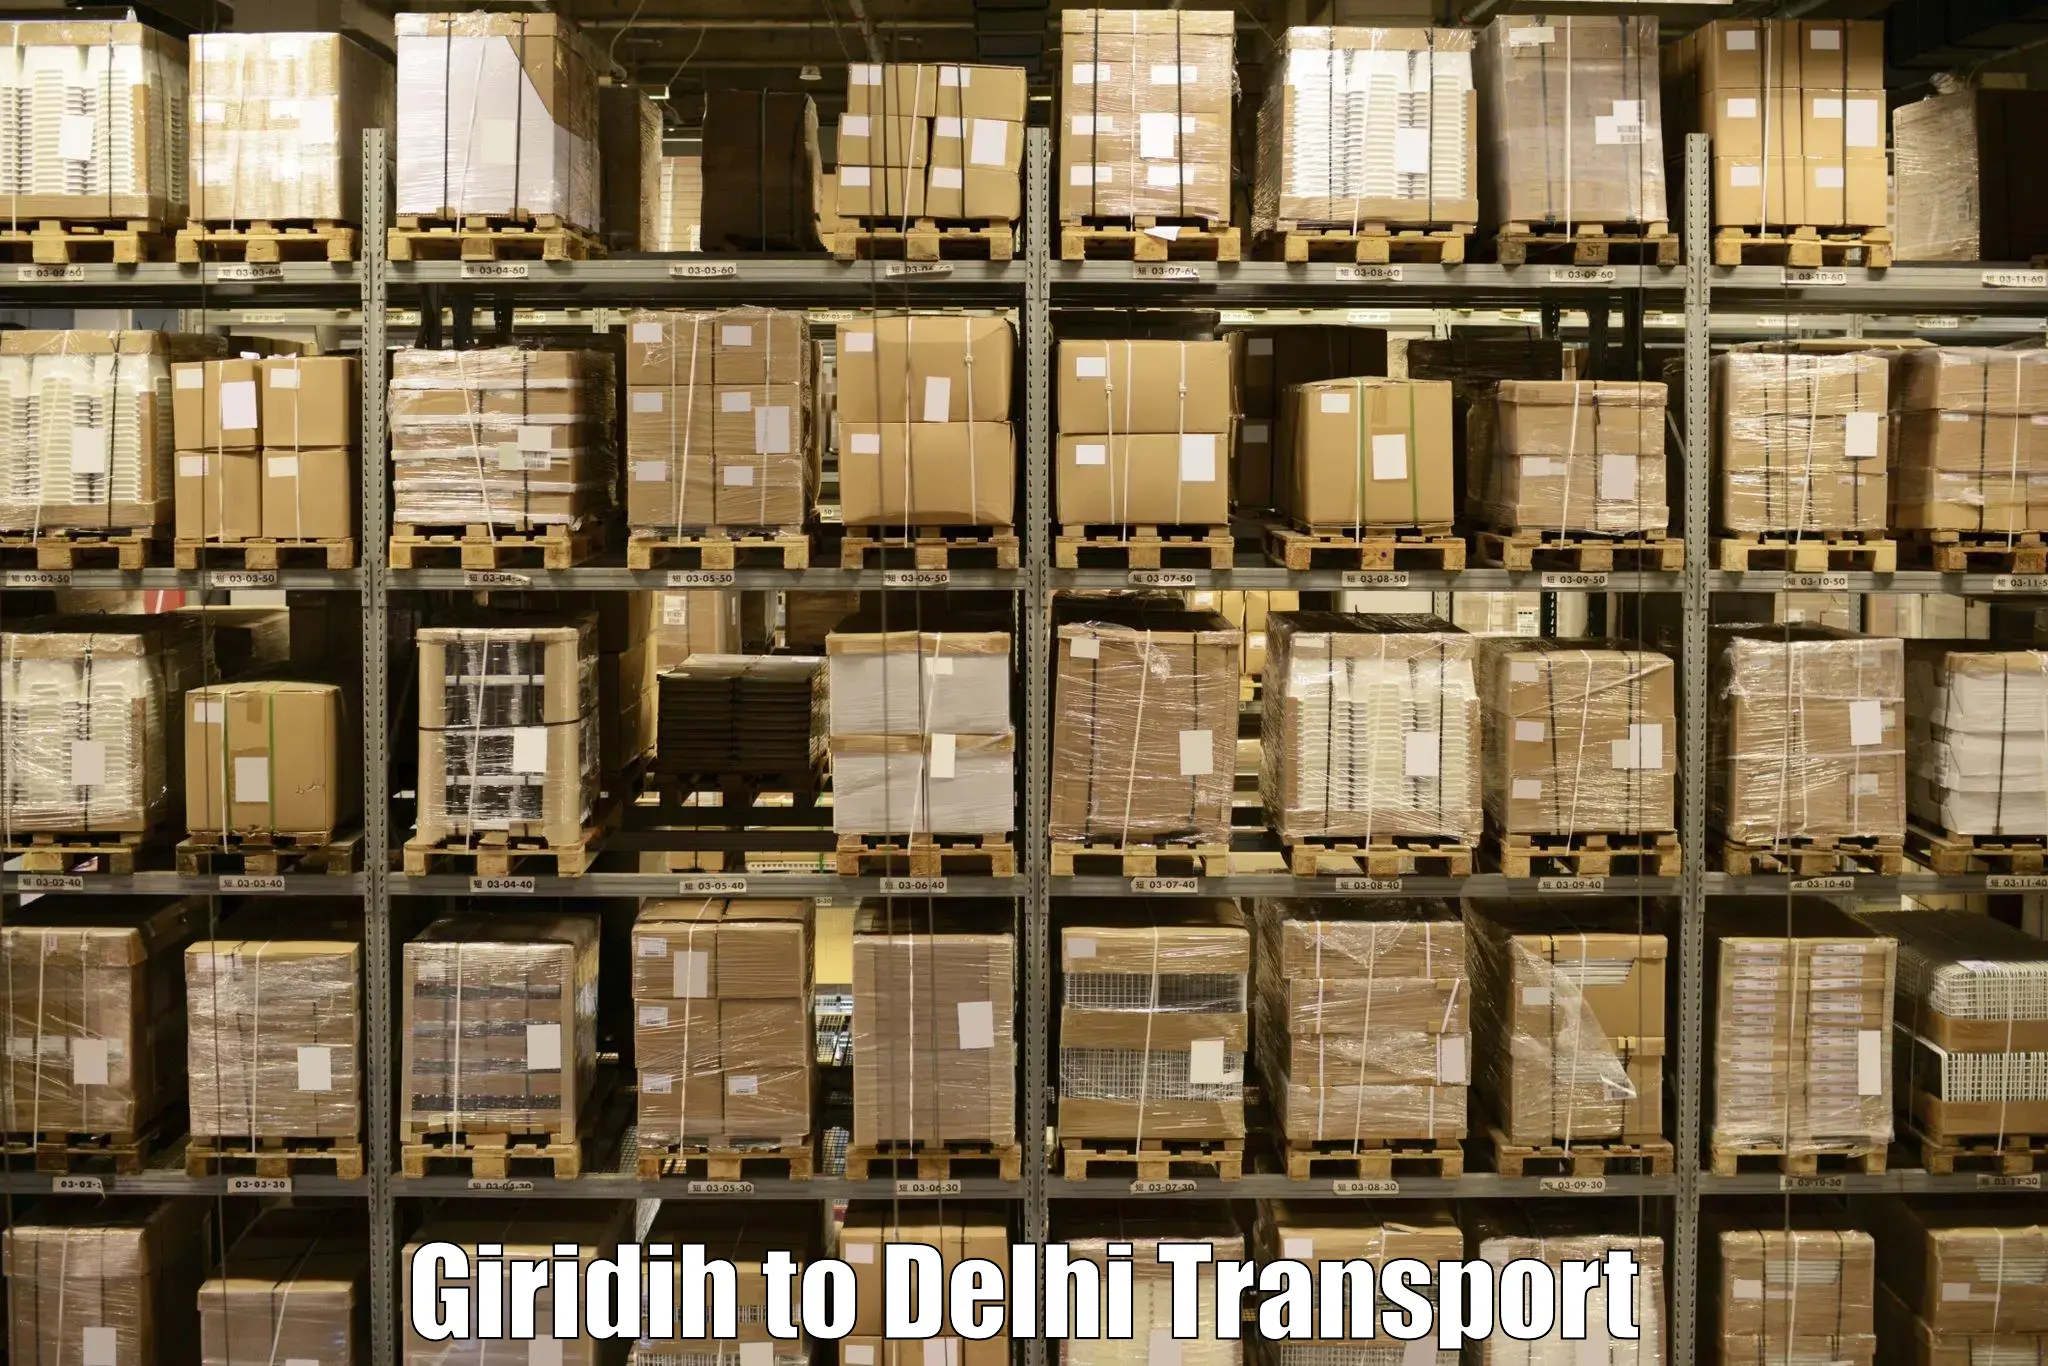 Express transport services Giridih to Sarojini Nagar